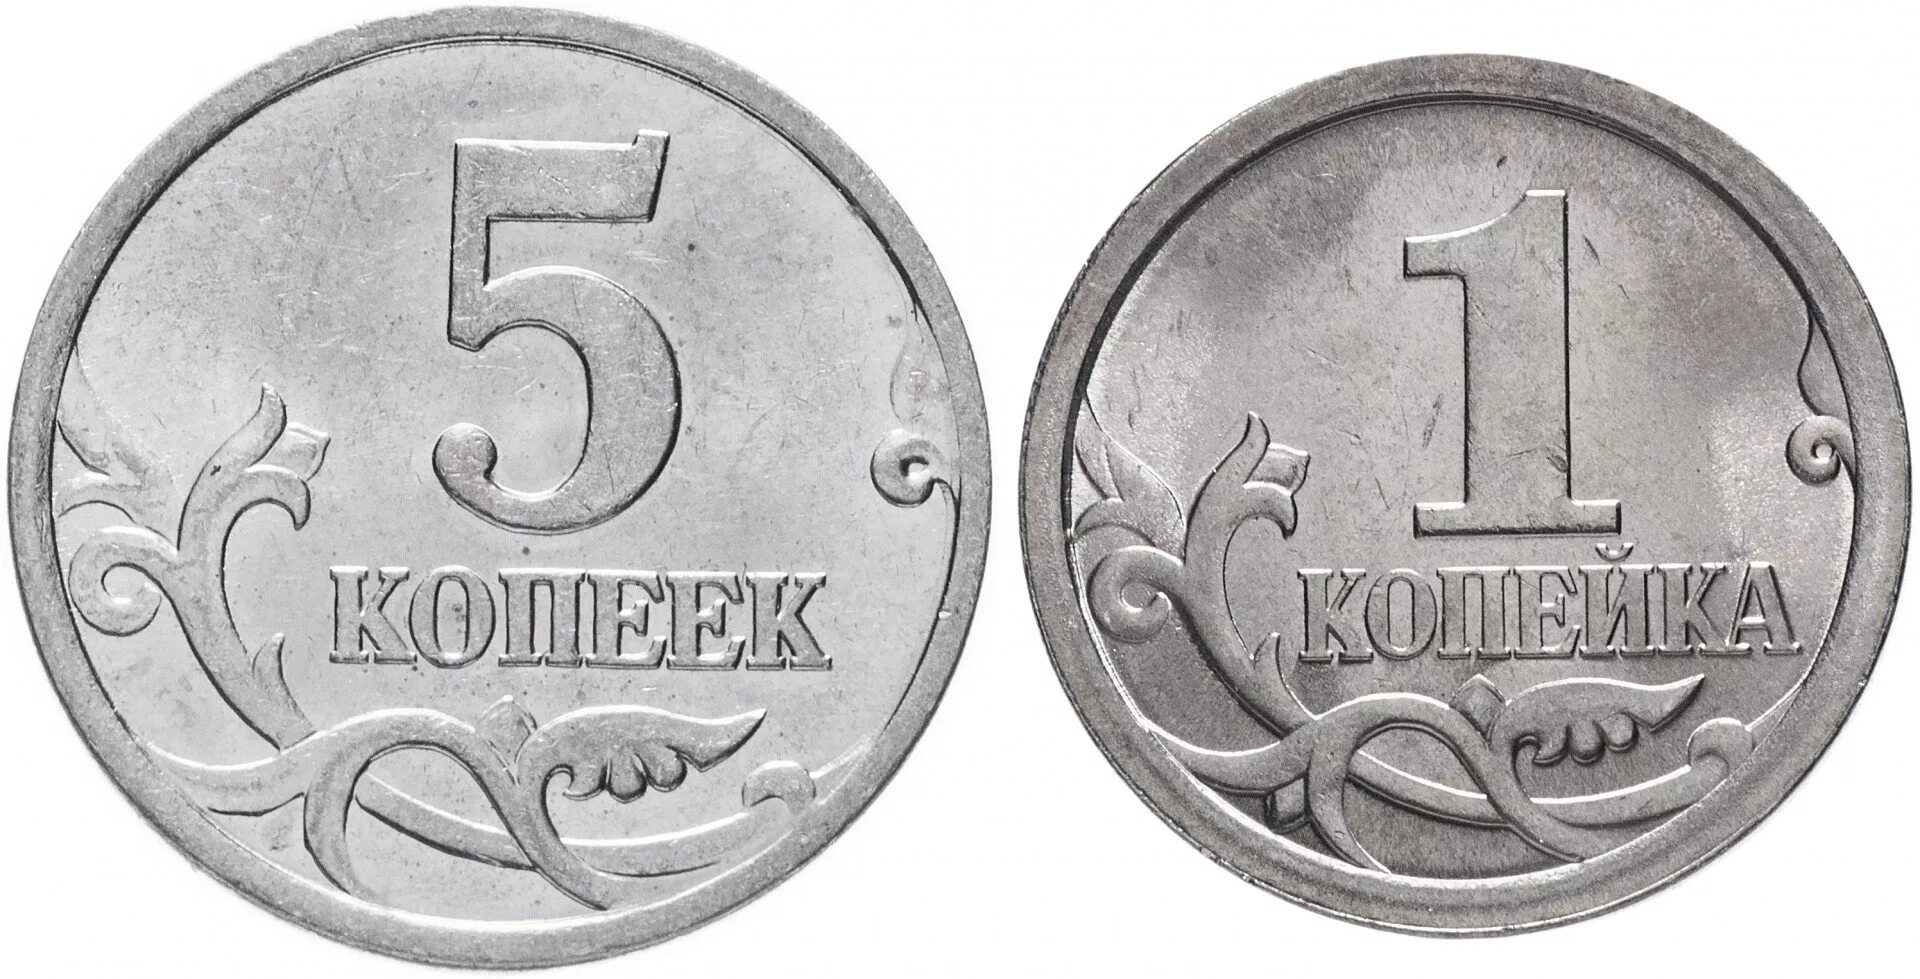 37 5 рублей. Российские монеты 1 копейка. Монеты 5 копеек и 1 копейка и 1 рубль. 1 Копейка и 5 копеек. Монеты 1 копейка 5 копеек.